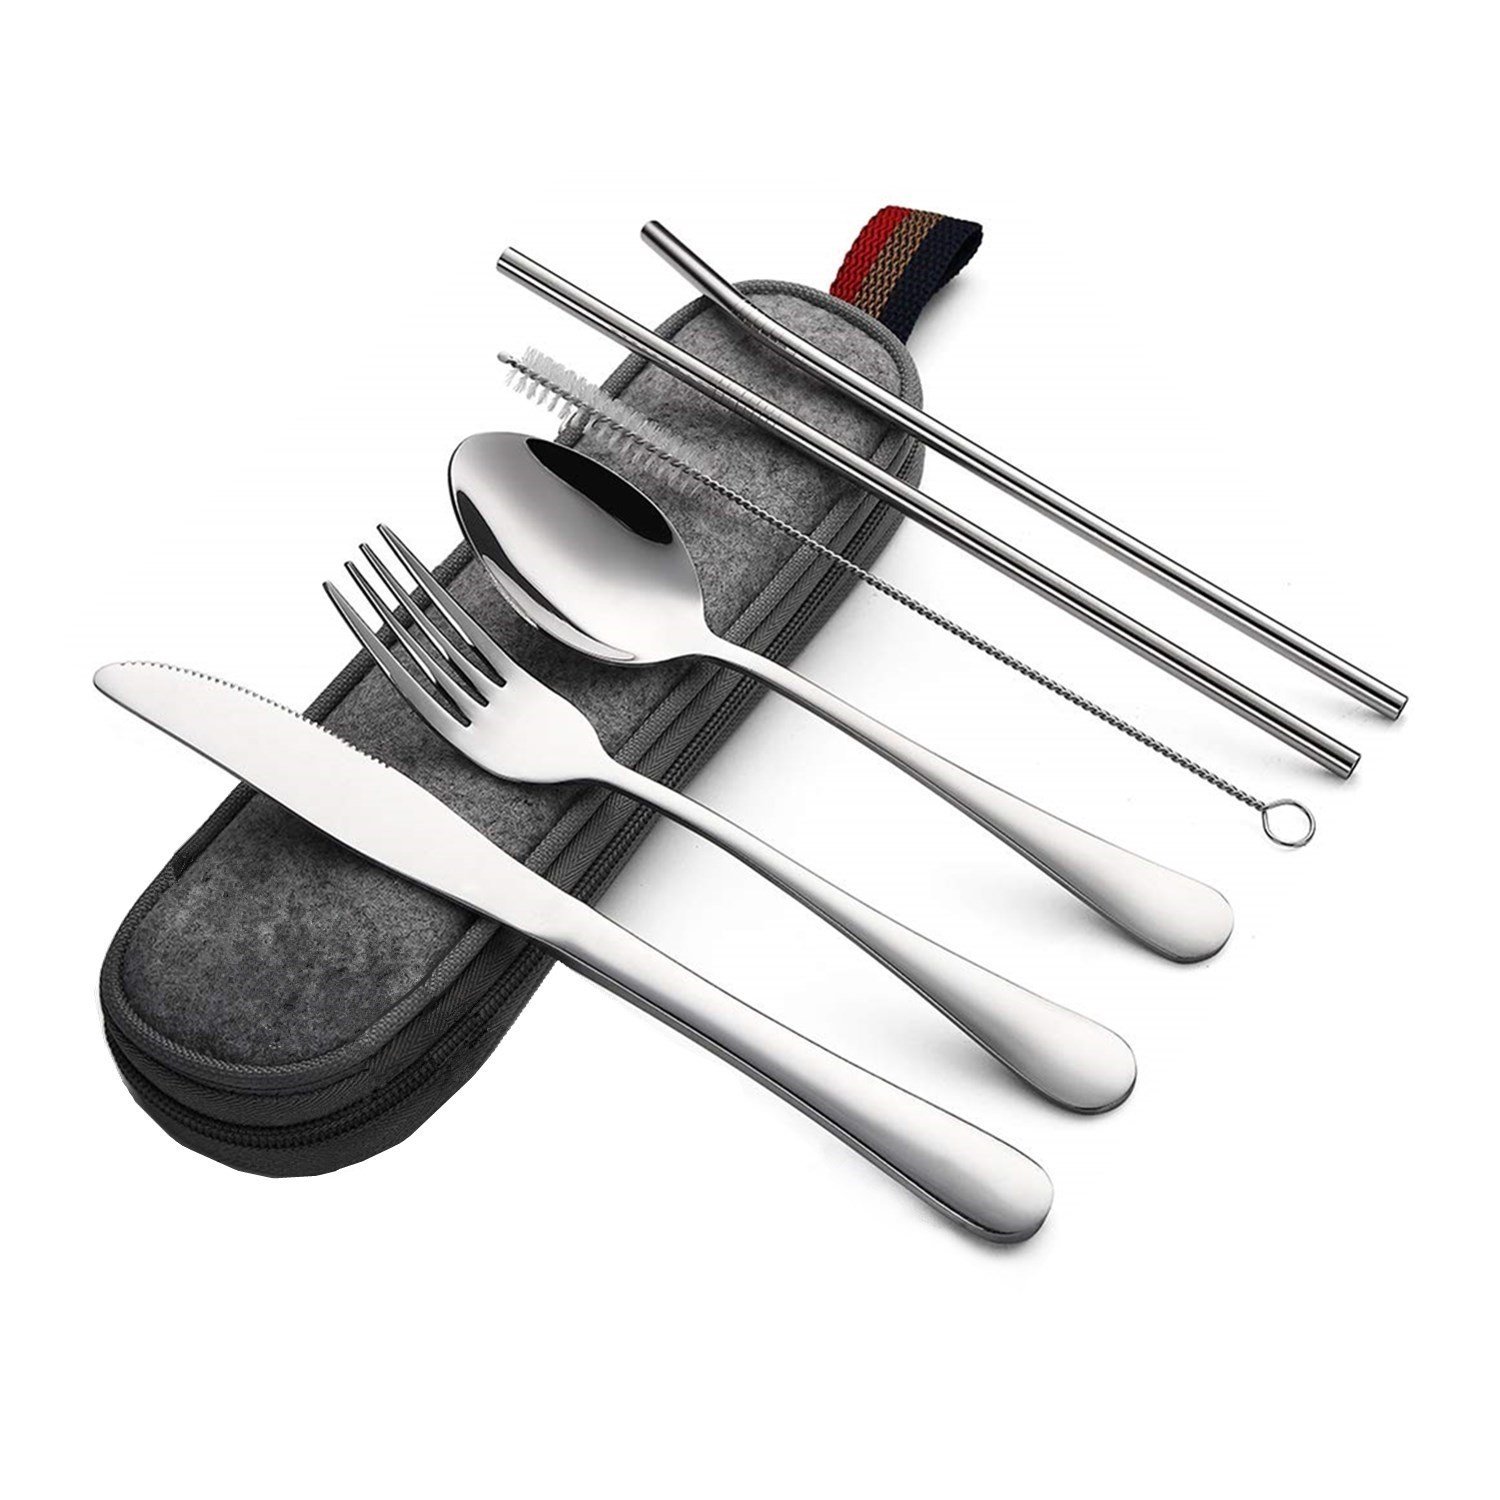 7Pcs Camping Silverware Cutlery Set